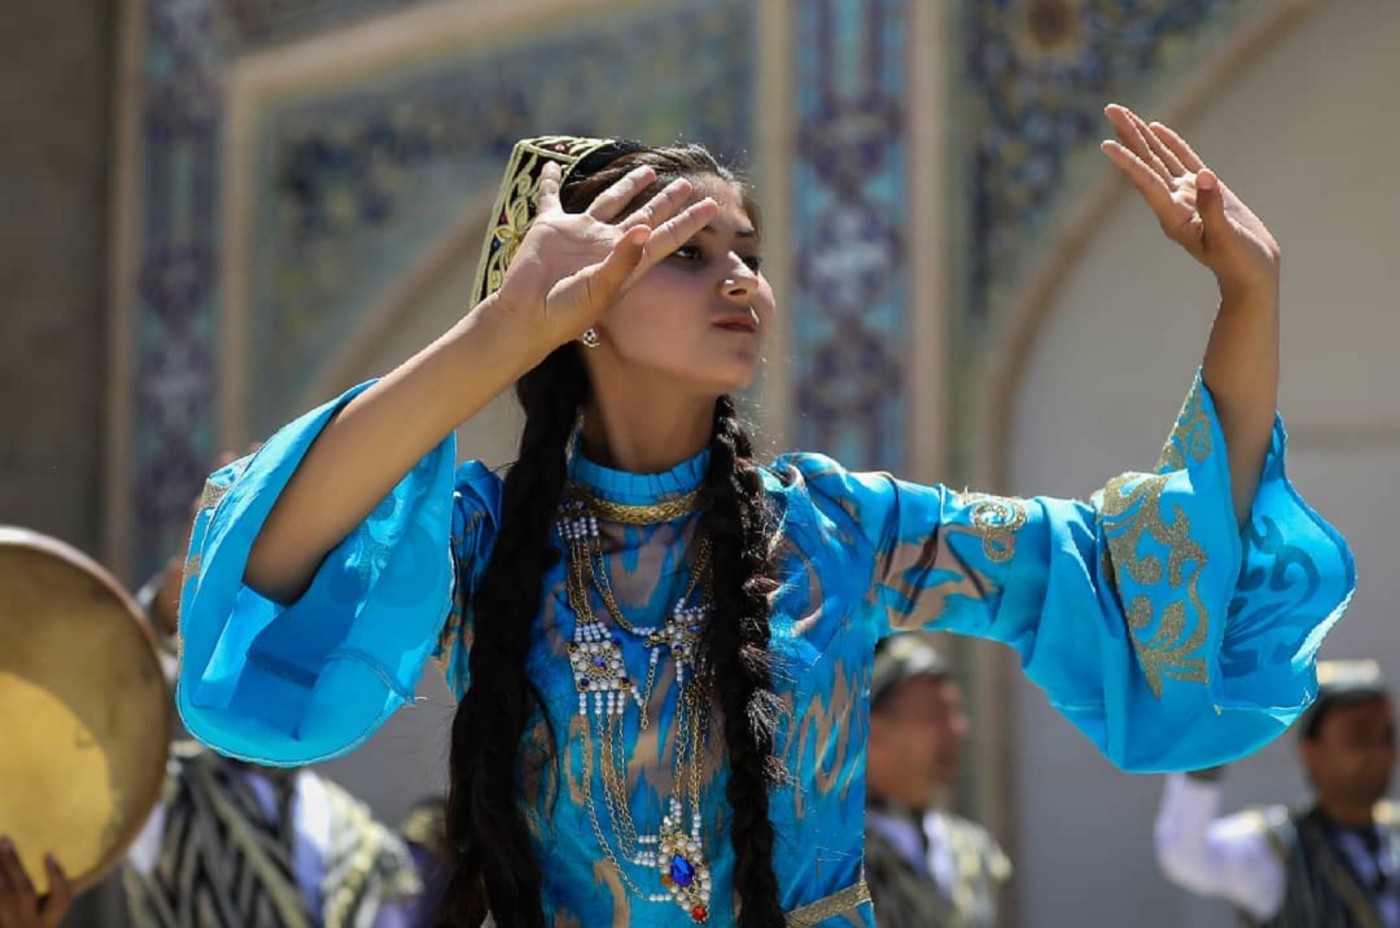 Узбекский стать. Узбекский национальный костюм. Узбекский костюм женский. Узбекская Национальная одежда женская. Узбекские национальные платья.